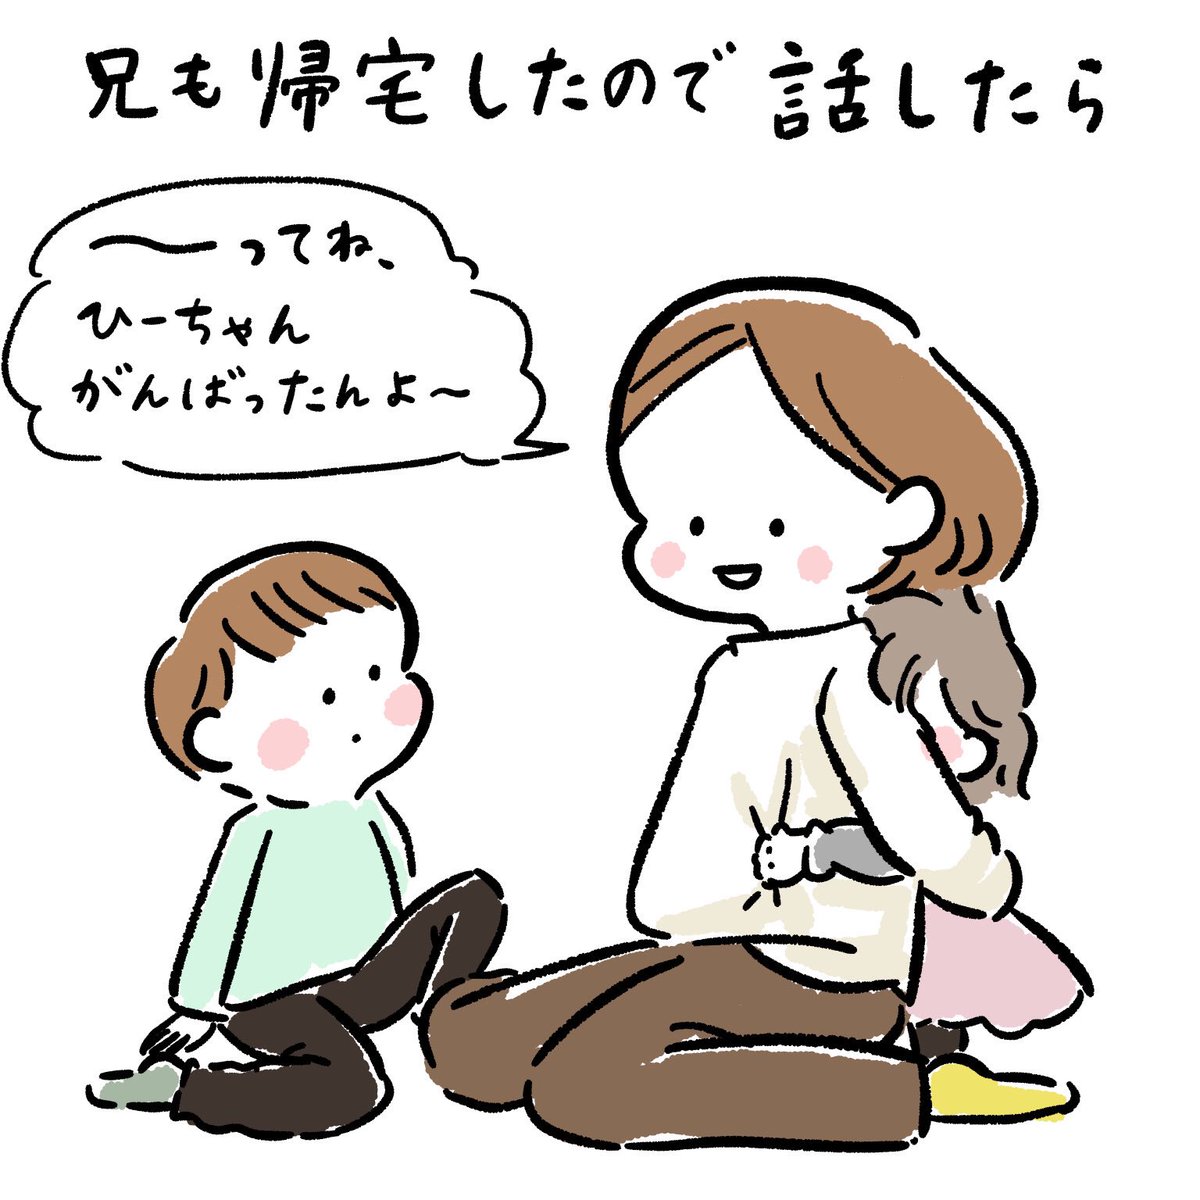 ひーちゃんと予防接種(5/5)
兄の愛編 